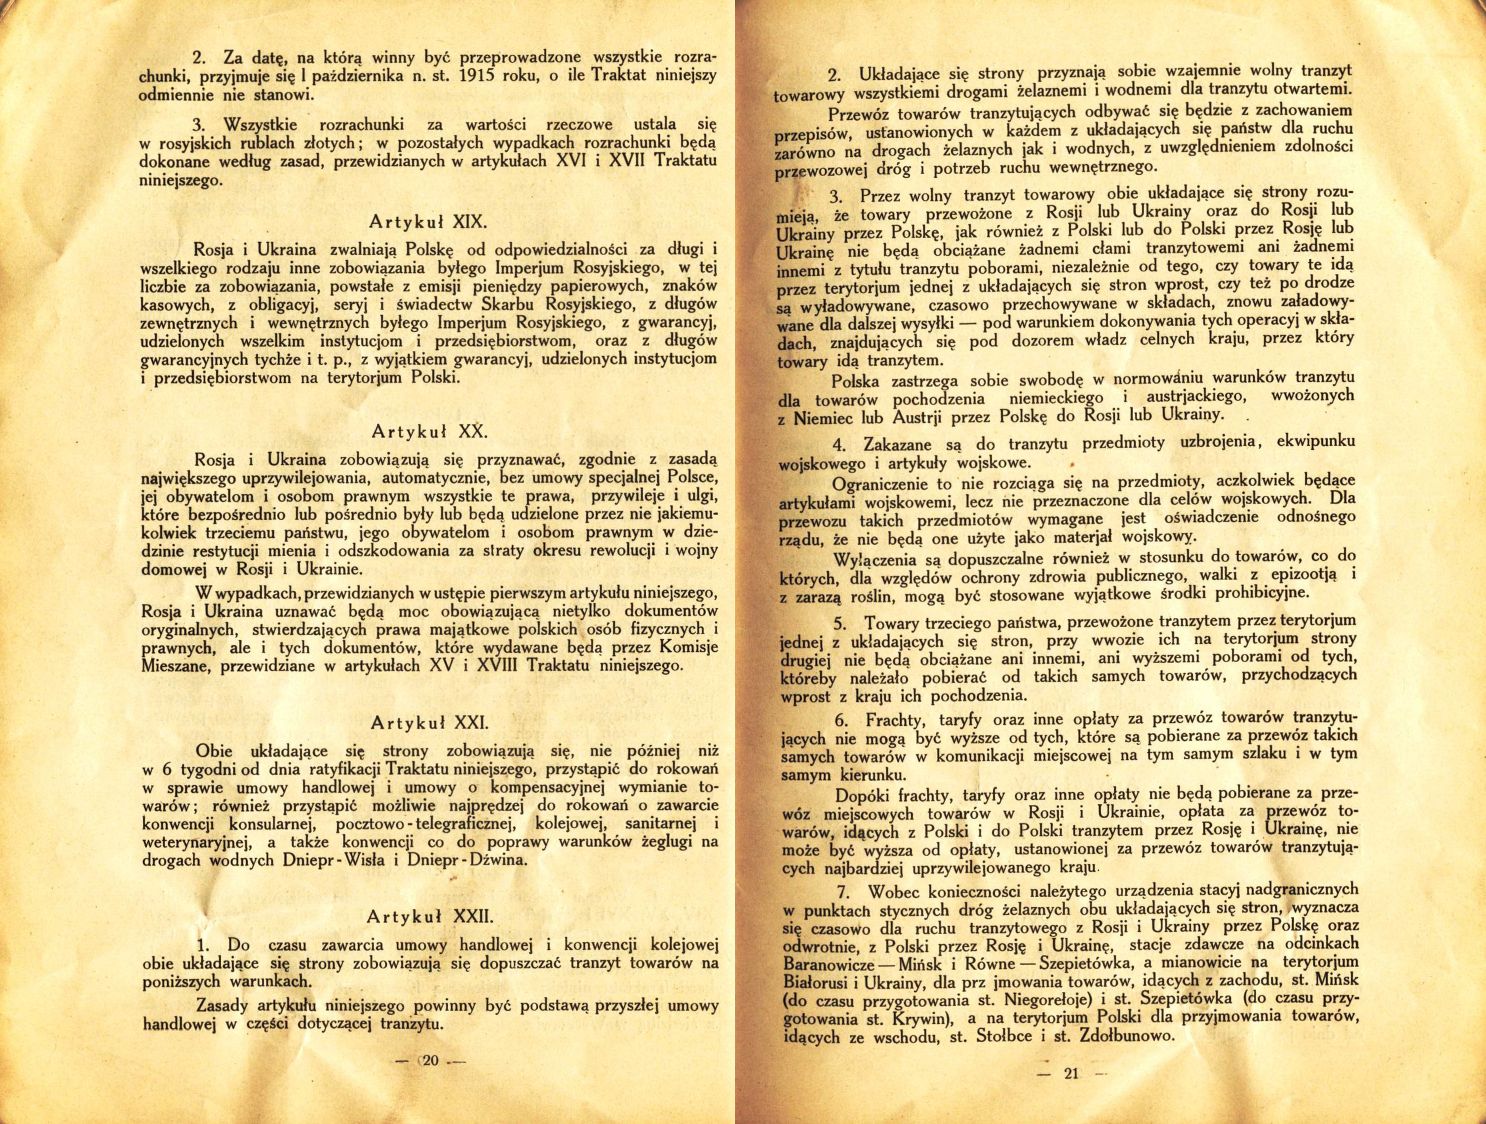 Traktat Pokoju między Polską a Rosją i Ukrainą podpisany w Rydze dnia 18 marca 1921 roku, s. 20-21, Akta Jana Dąbskiego, sygn. 5